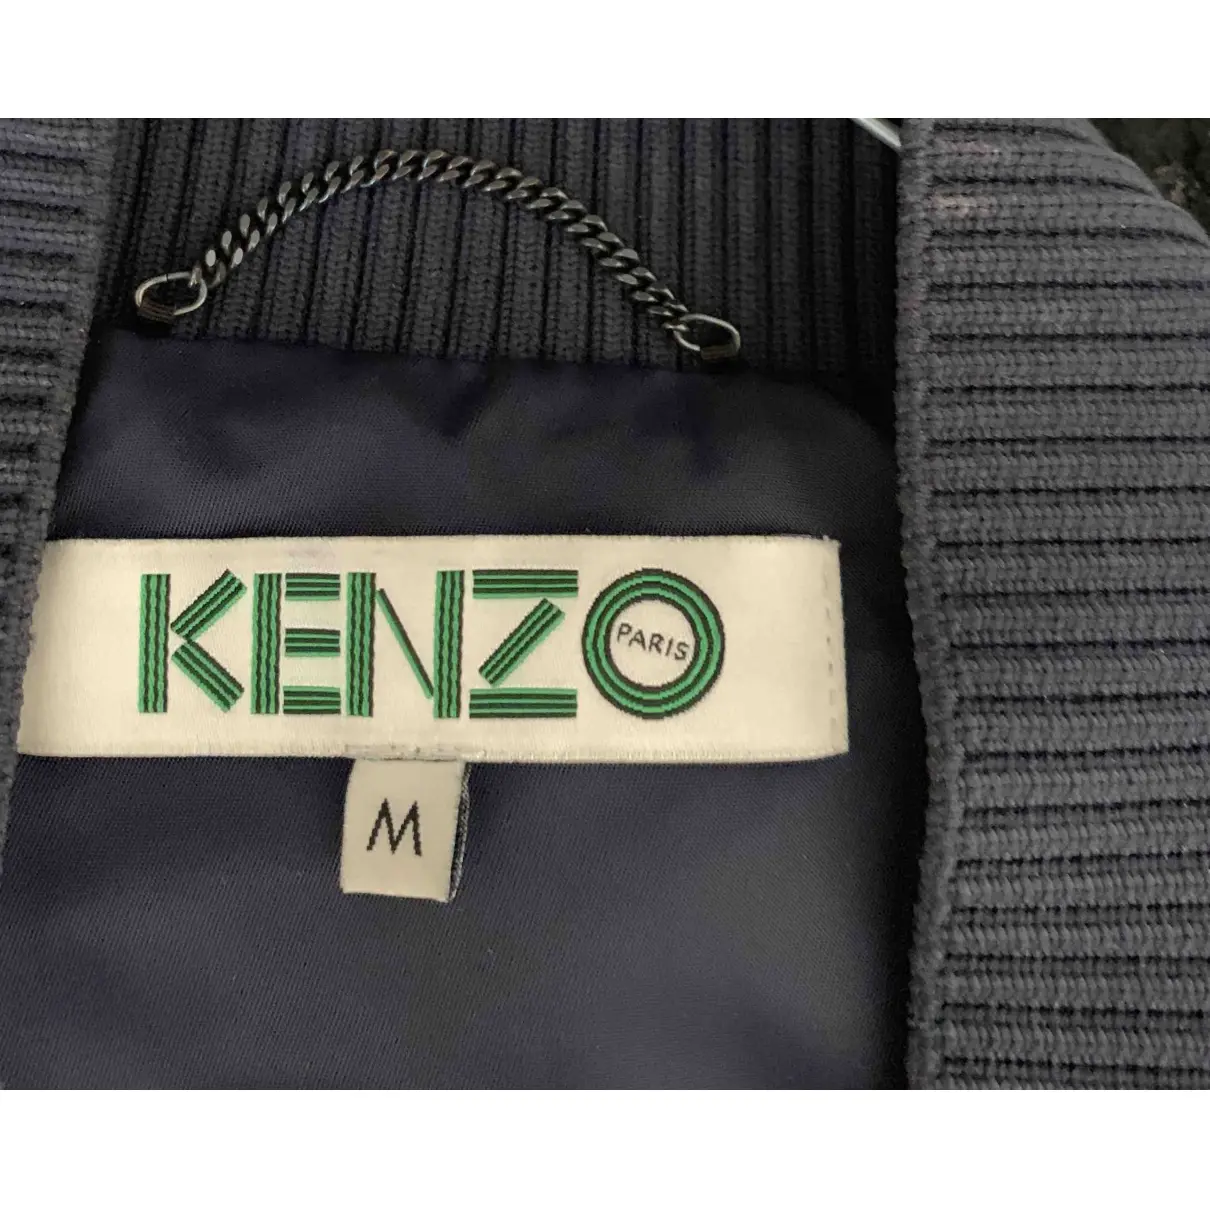 Buy Kenzo Jacket online